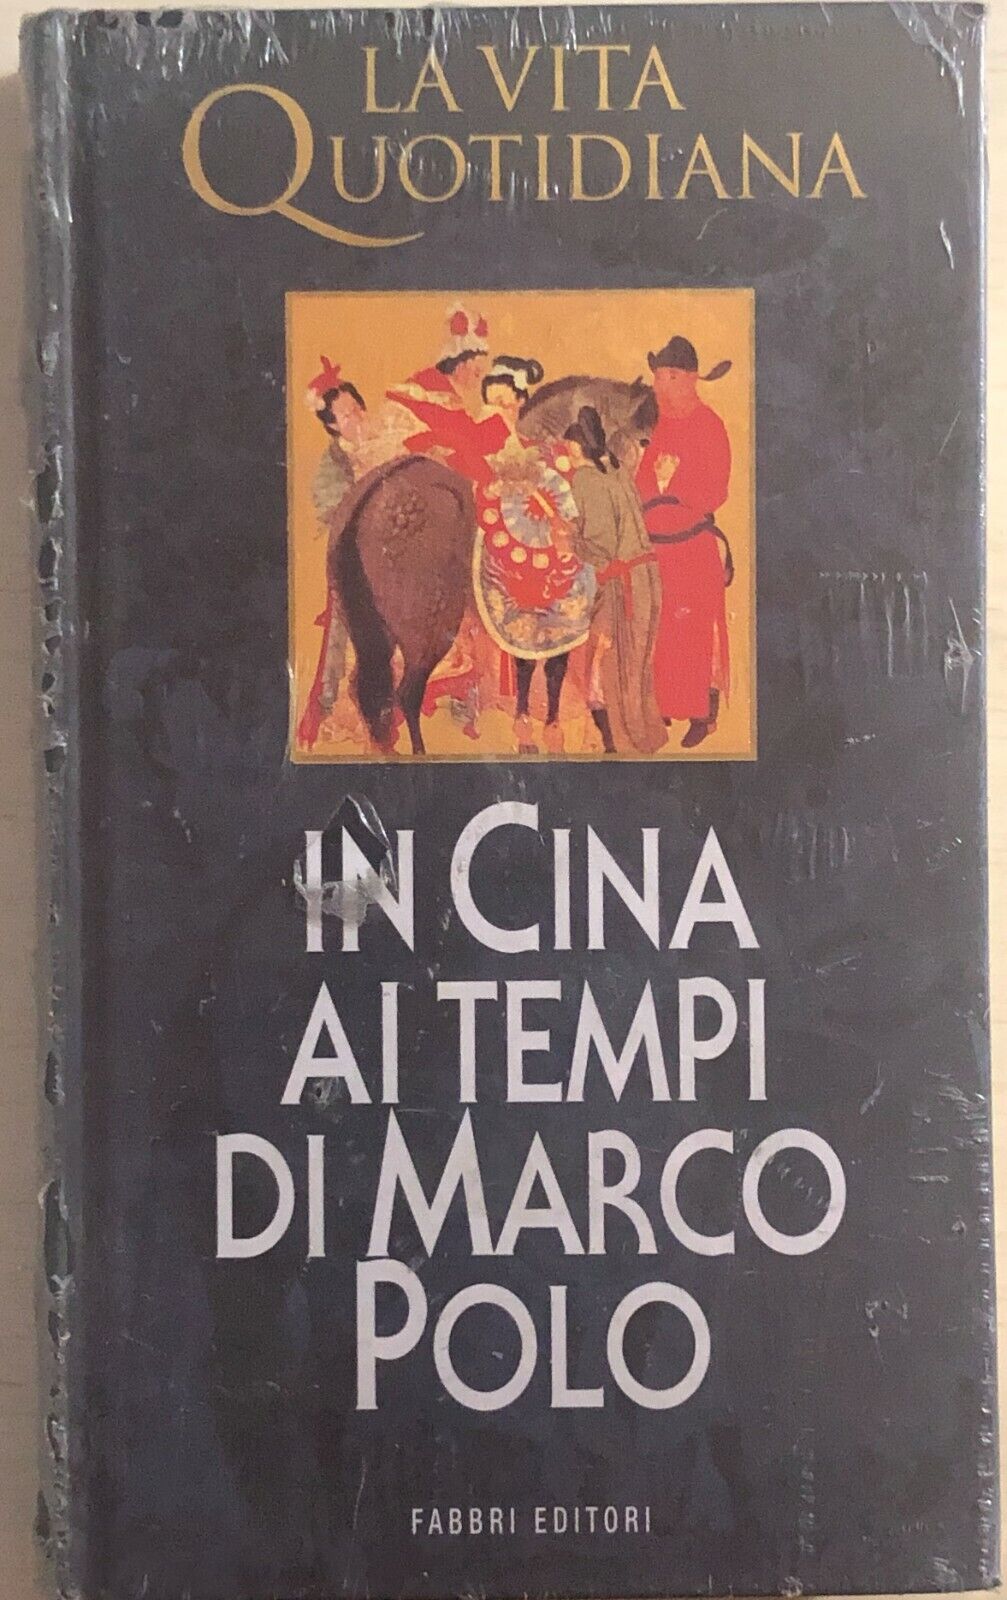 La vita quotidiana in Cina ai tempi di Marco Polo di Aa.vv., 1998, Fabbri Editor